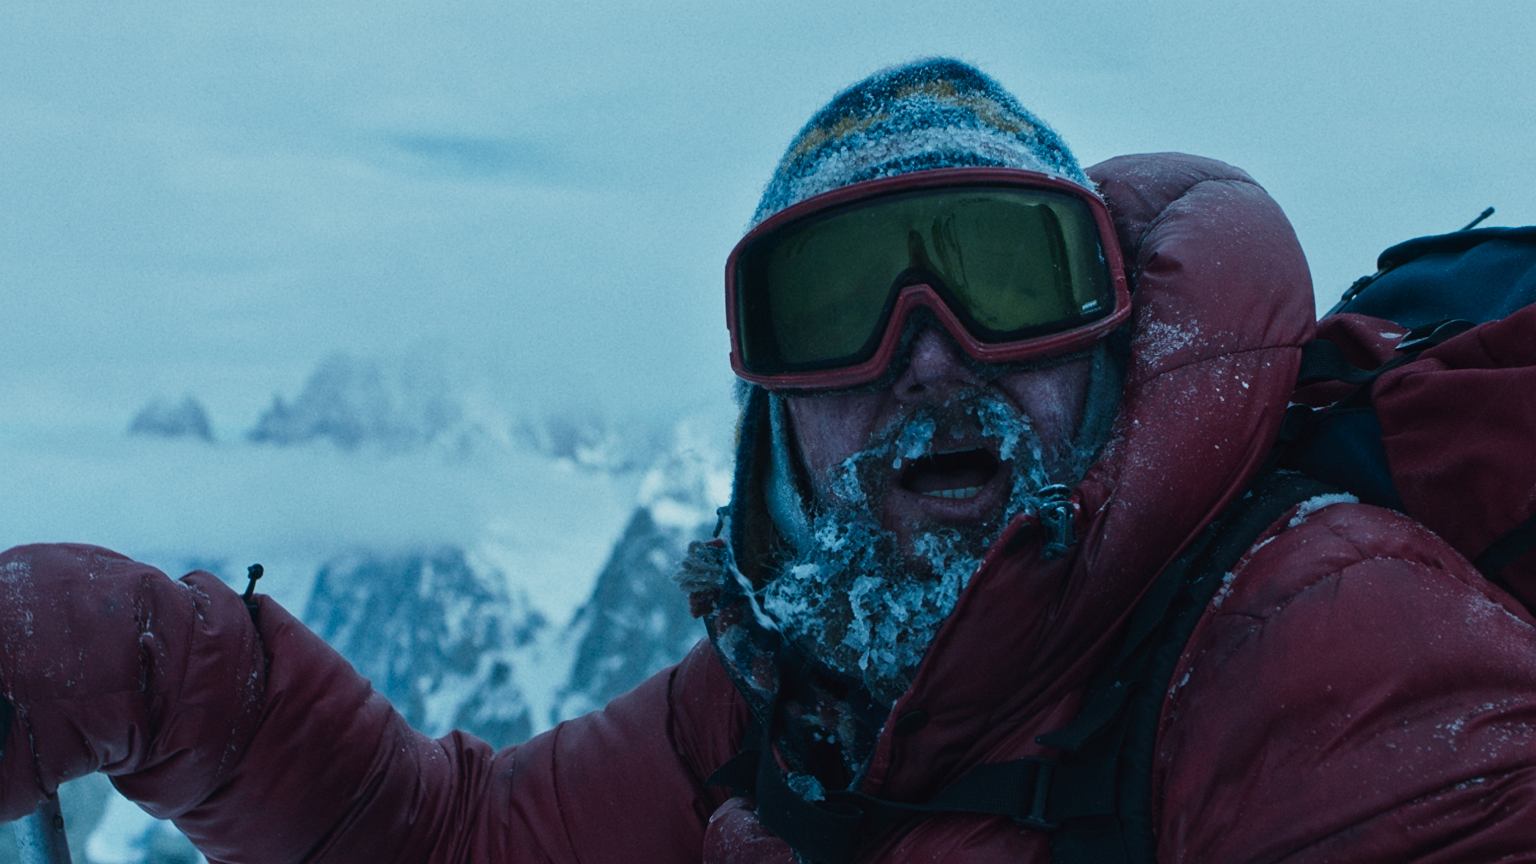 broad peak netflix - Broad Peak : un film d'action qui marche dans les pas de Maciej Berbeka, le légendaire alpiniste polonais